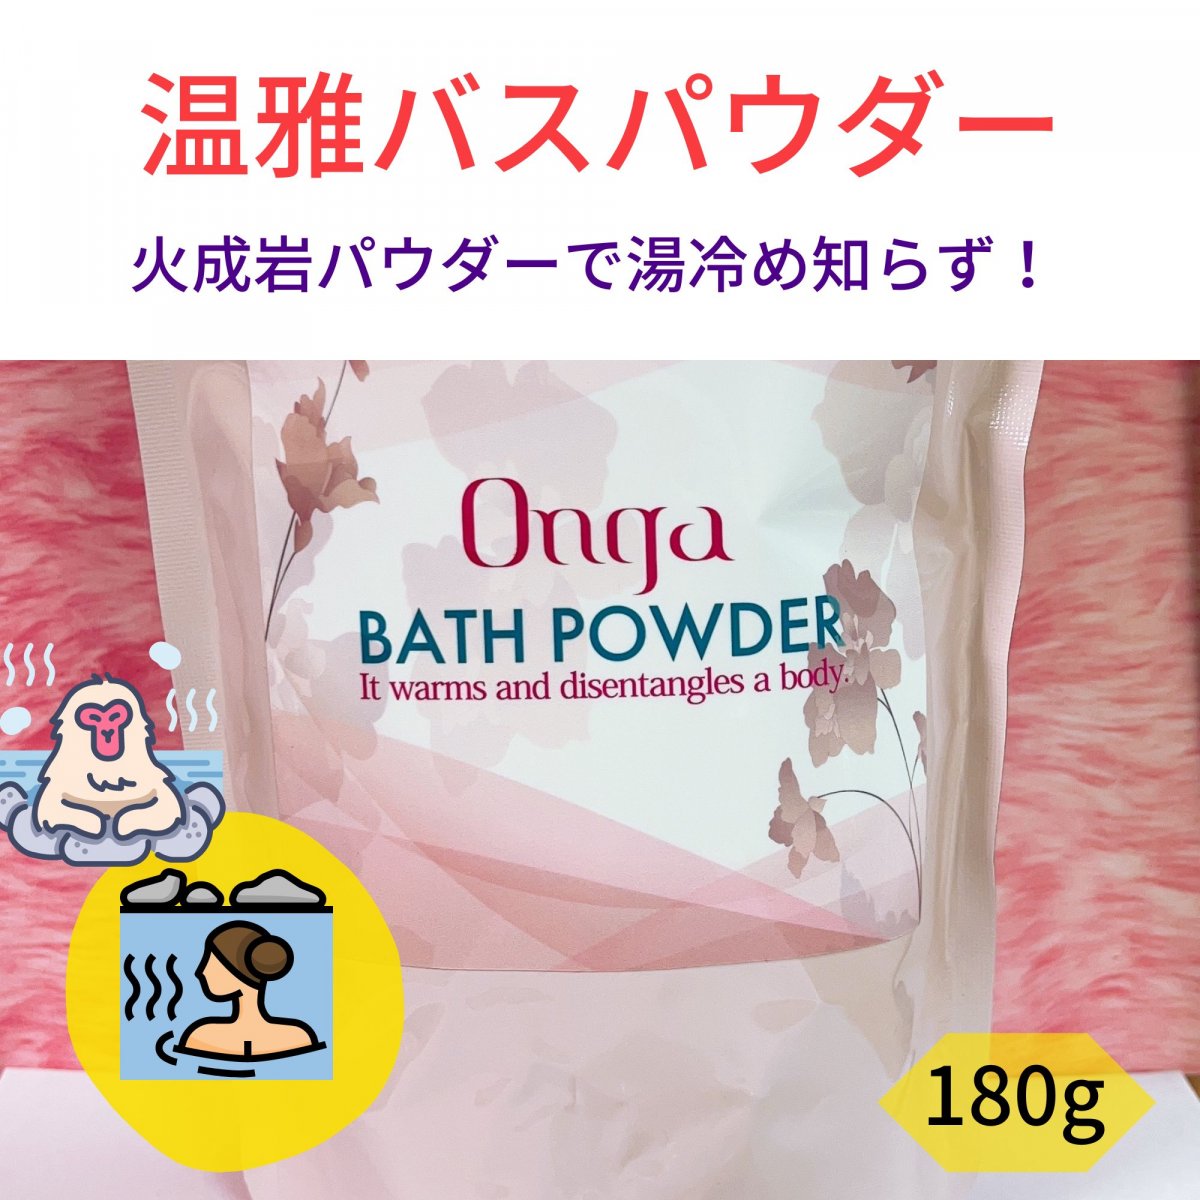 Onga(温雅)バスパウダー / ご家庭でラドン浴を！入浴剤 180g